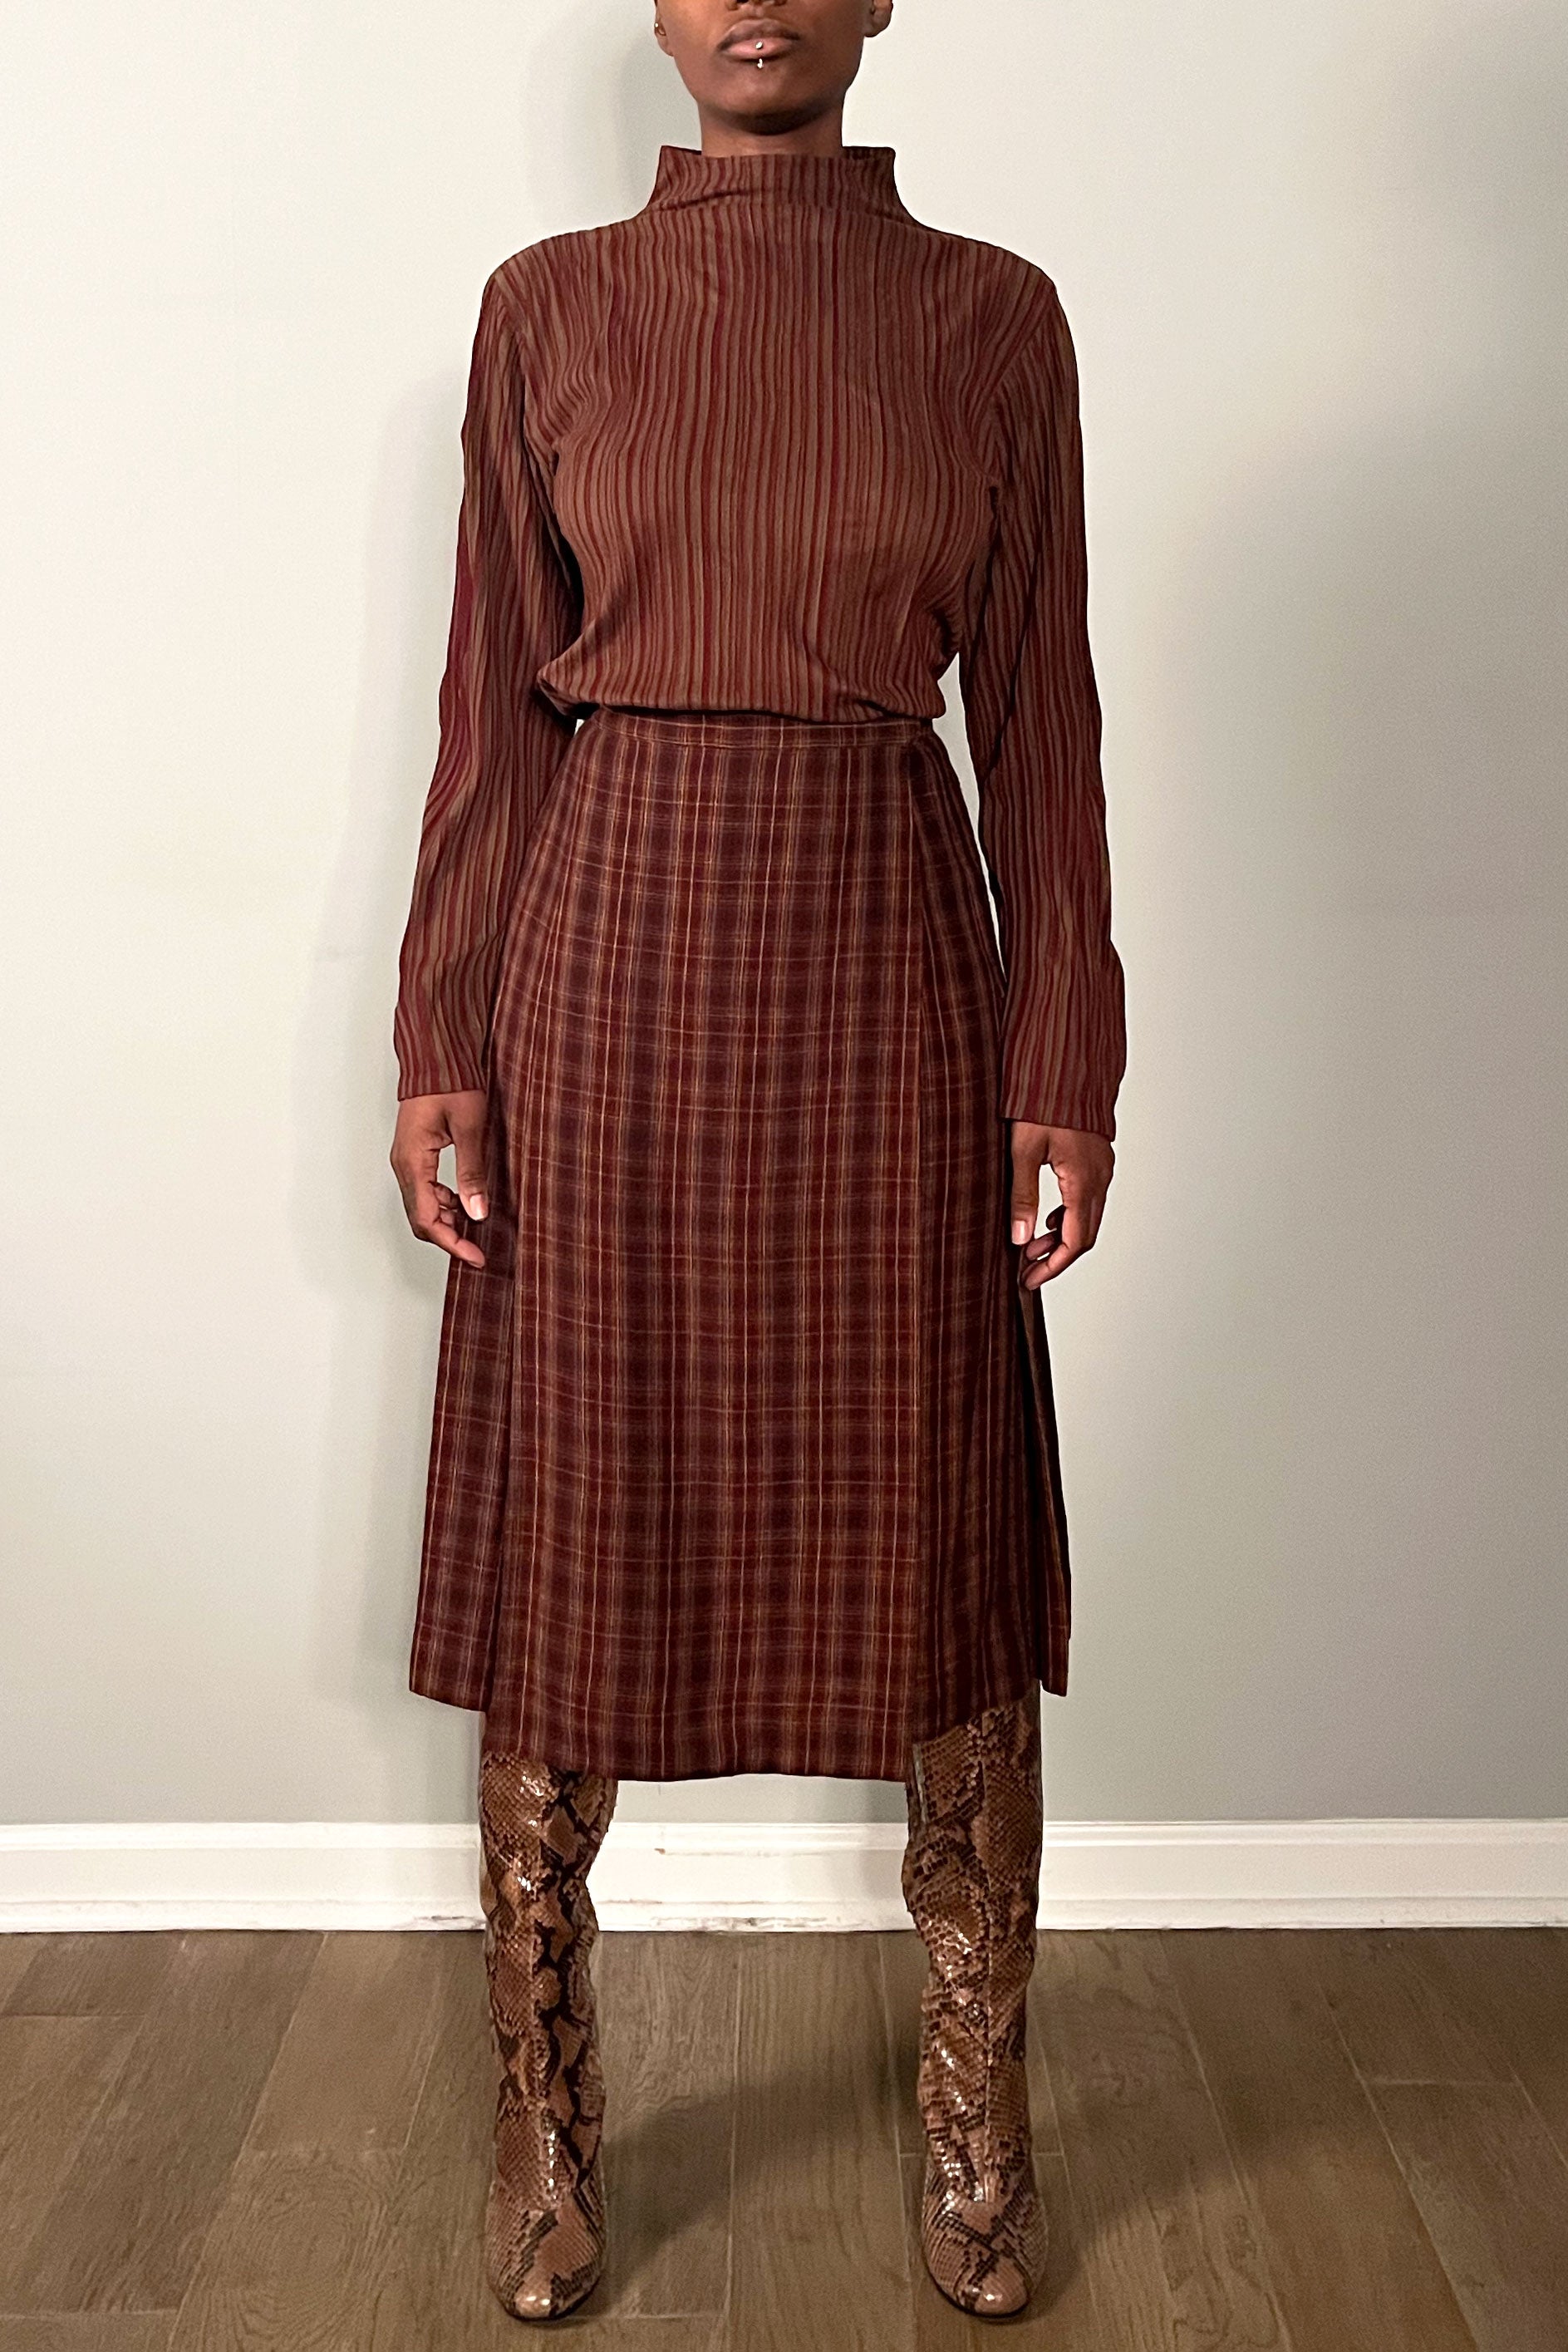 Saint Laurent Plaid Wool Skirt